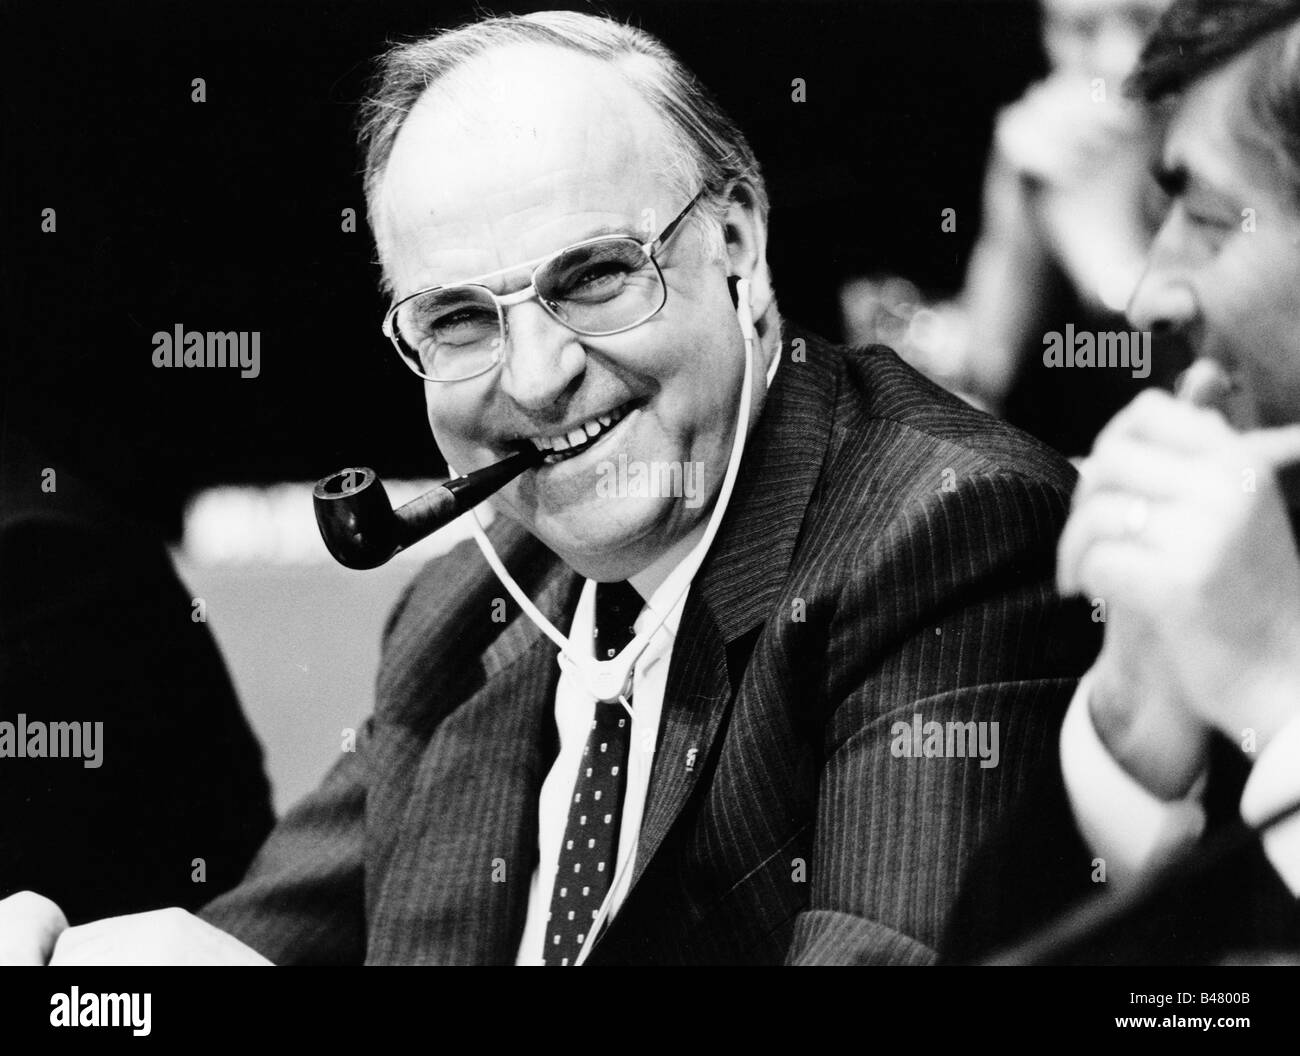 Kohl, Helmut, * 3.4.1930, politico tedesco (CDU), cancelliere della Germania 1982-1998, a metà della durata della conferenza del Partito Popolare europeo, 1986, Foto Stock